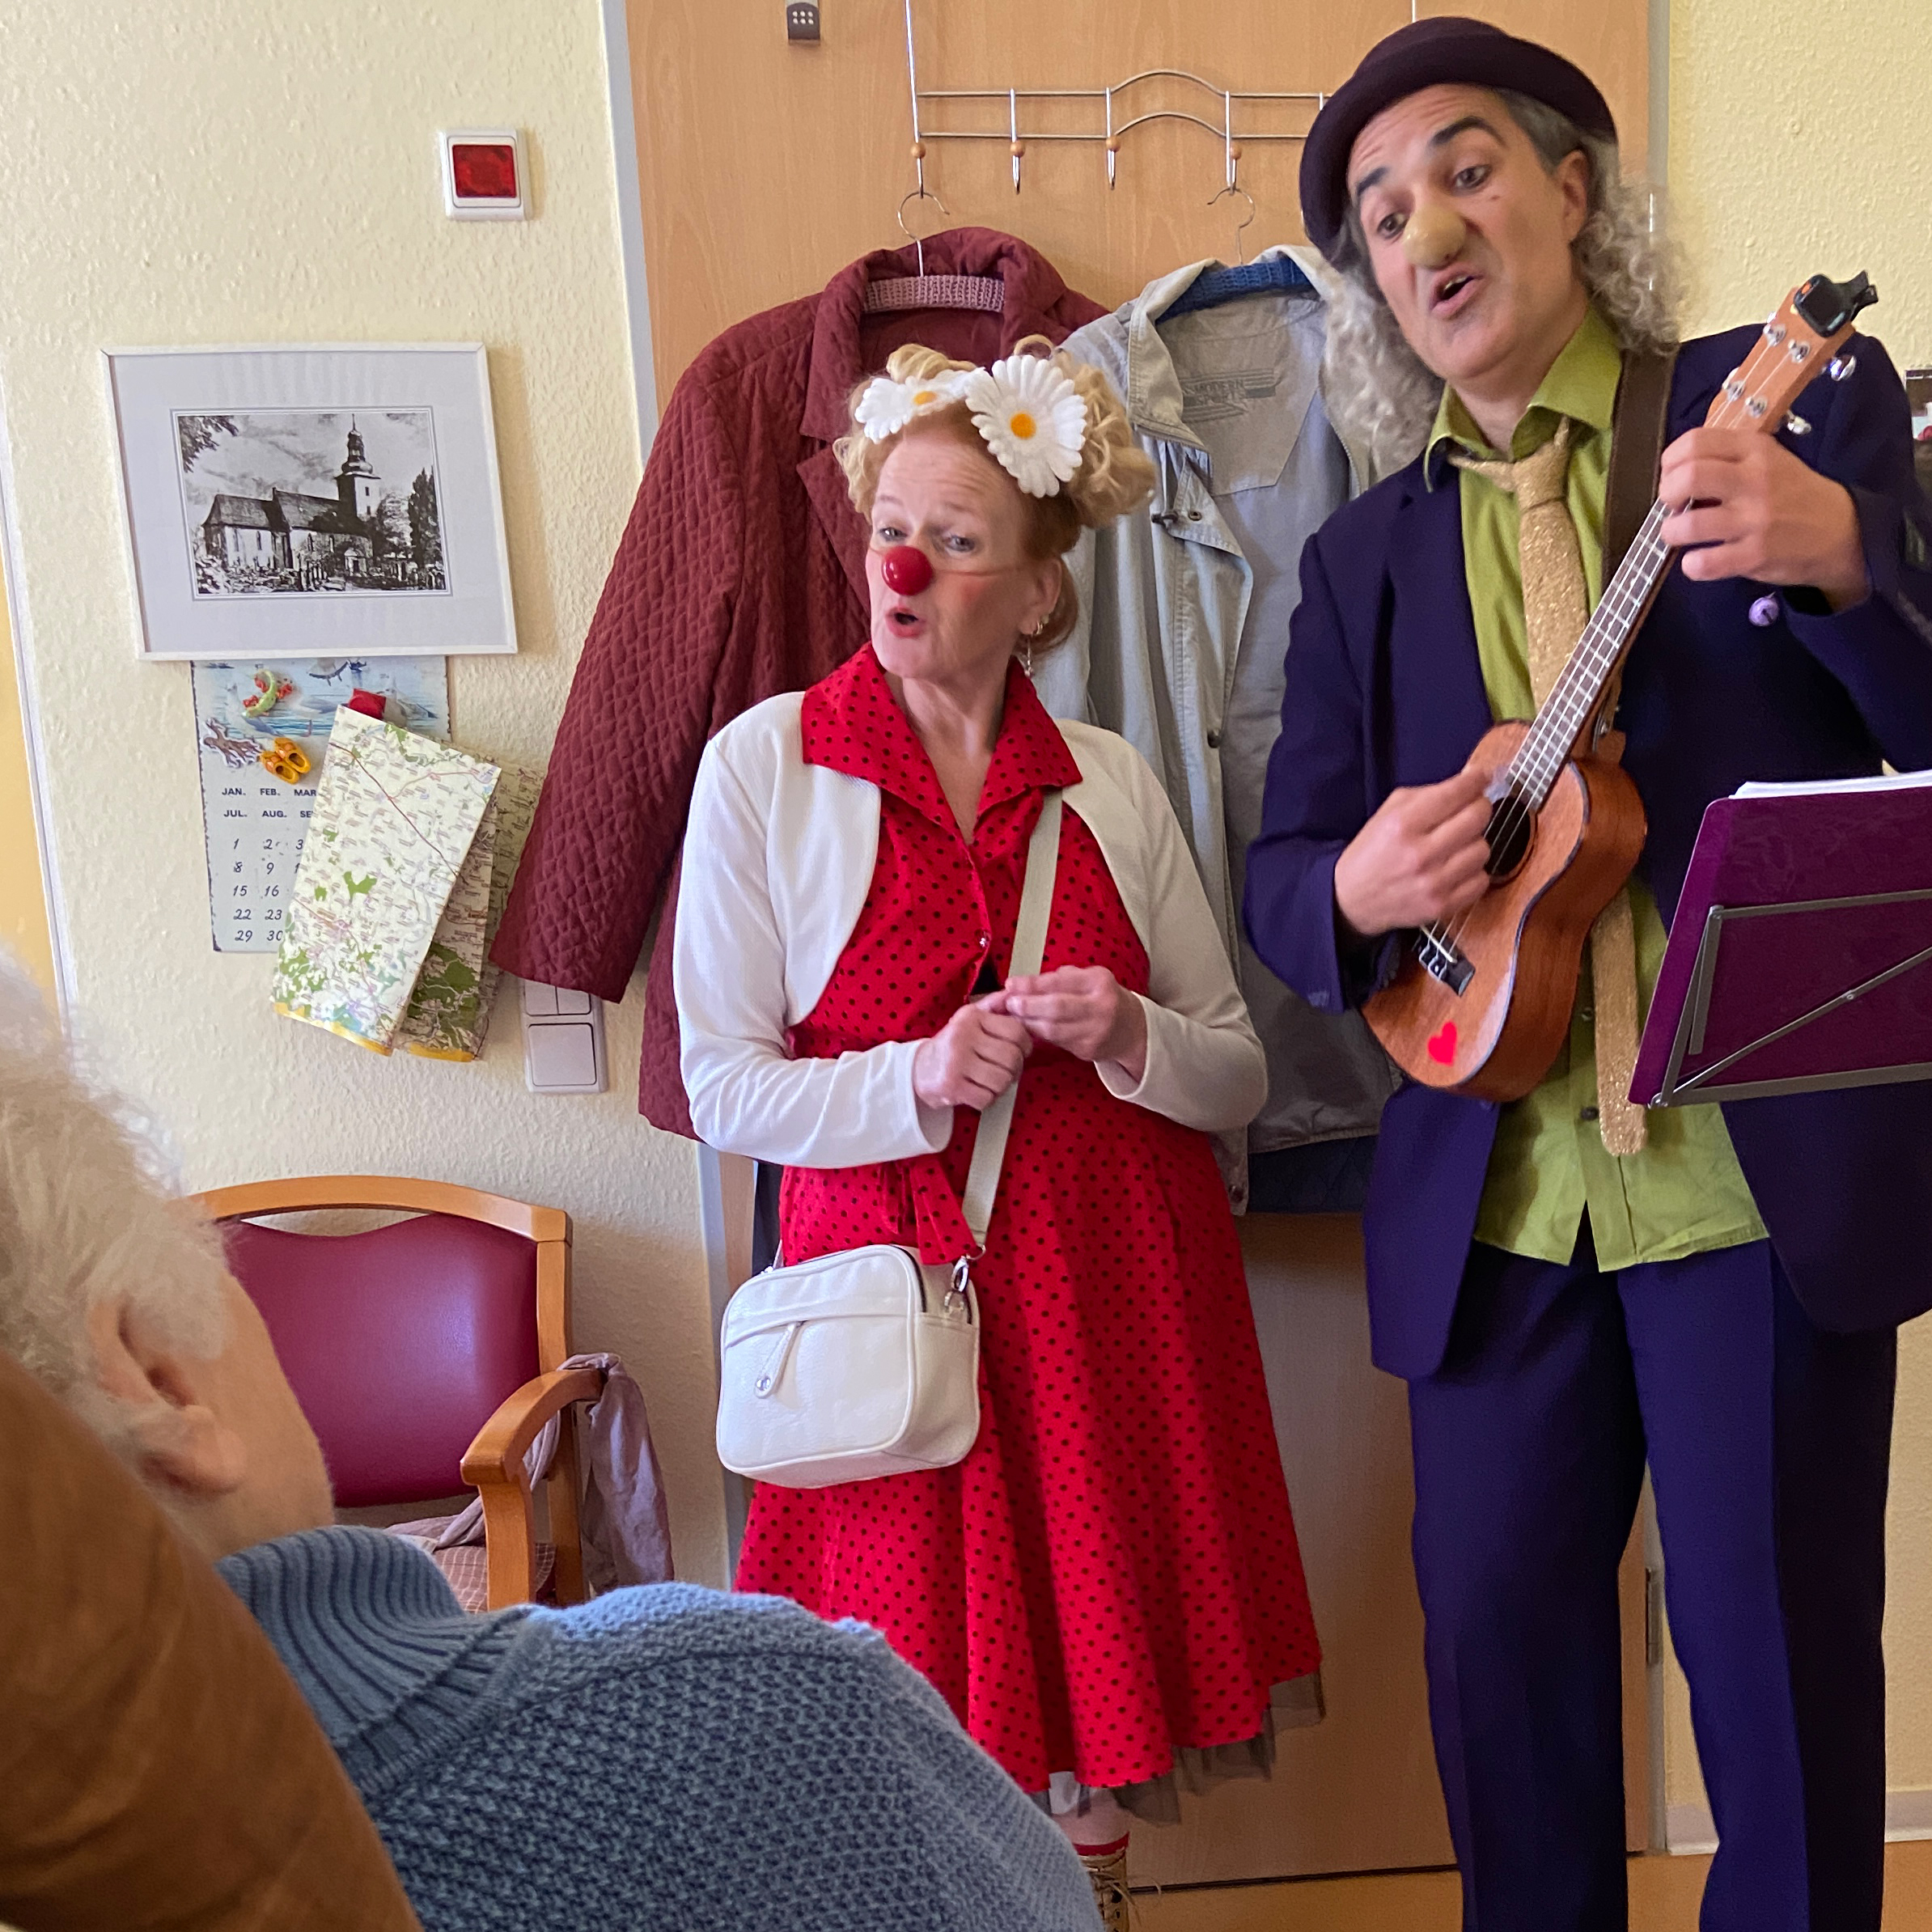 Die Klinikclowns Nino Anders und Carlotta McKaber begeistern mit ulkigen Liedern. Foto: Kerstin Kempermann